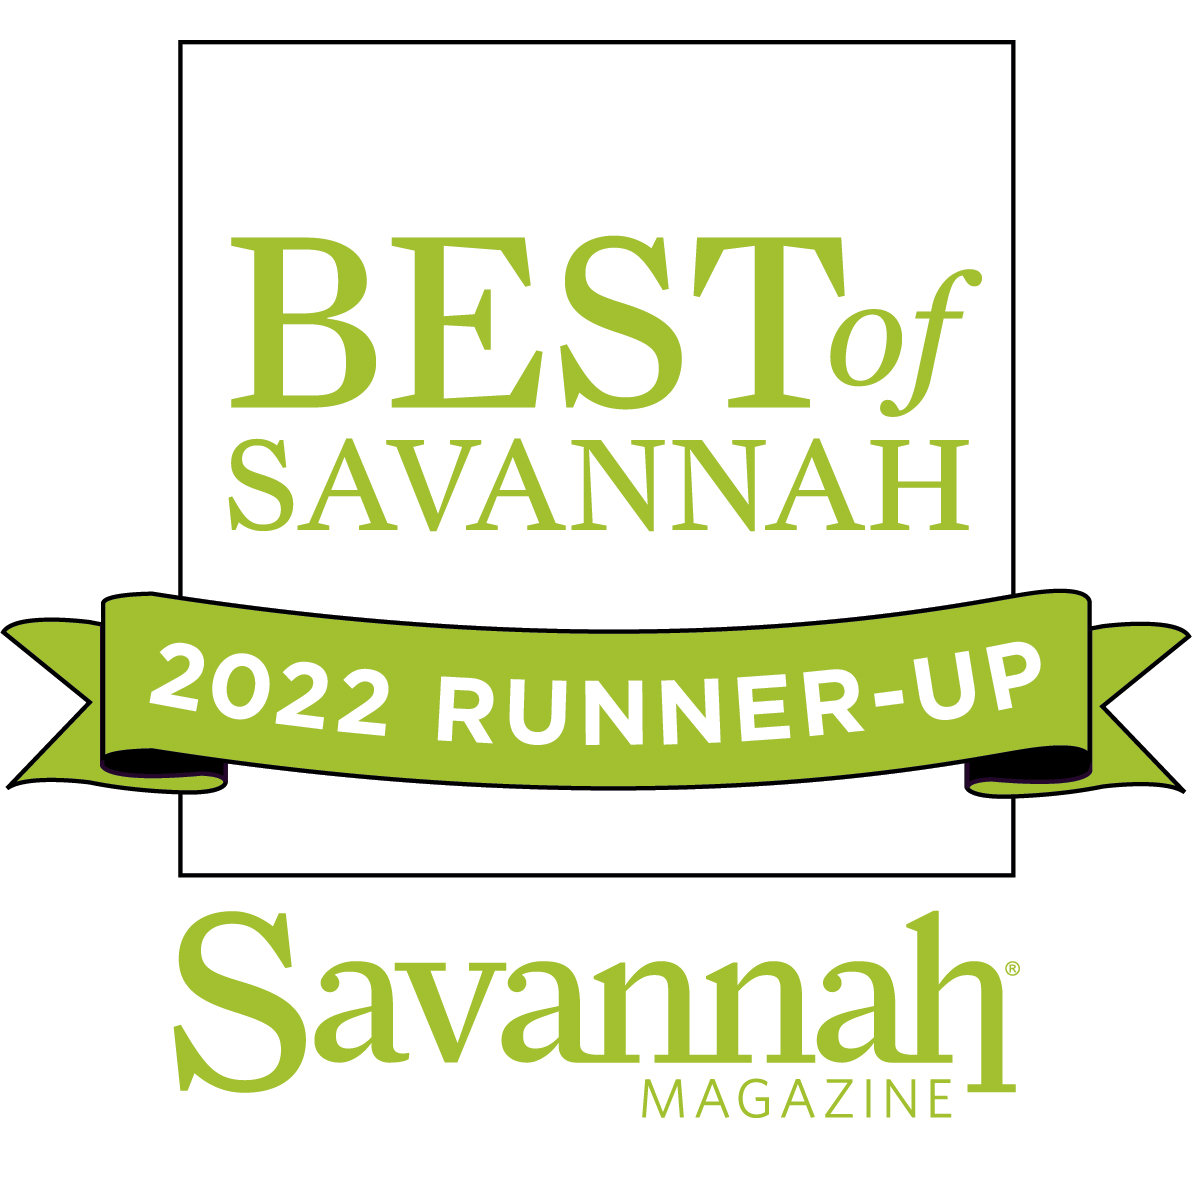 Best of Savannah 2022